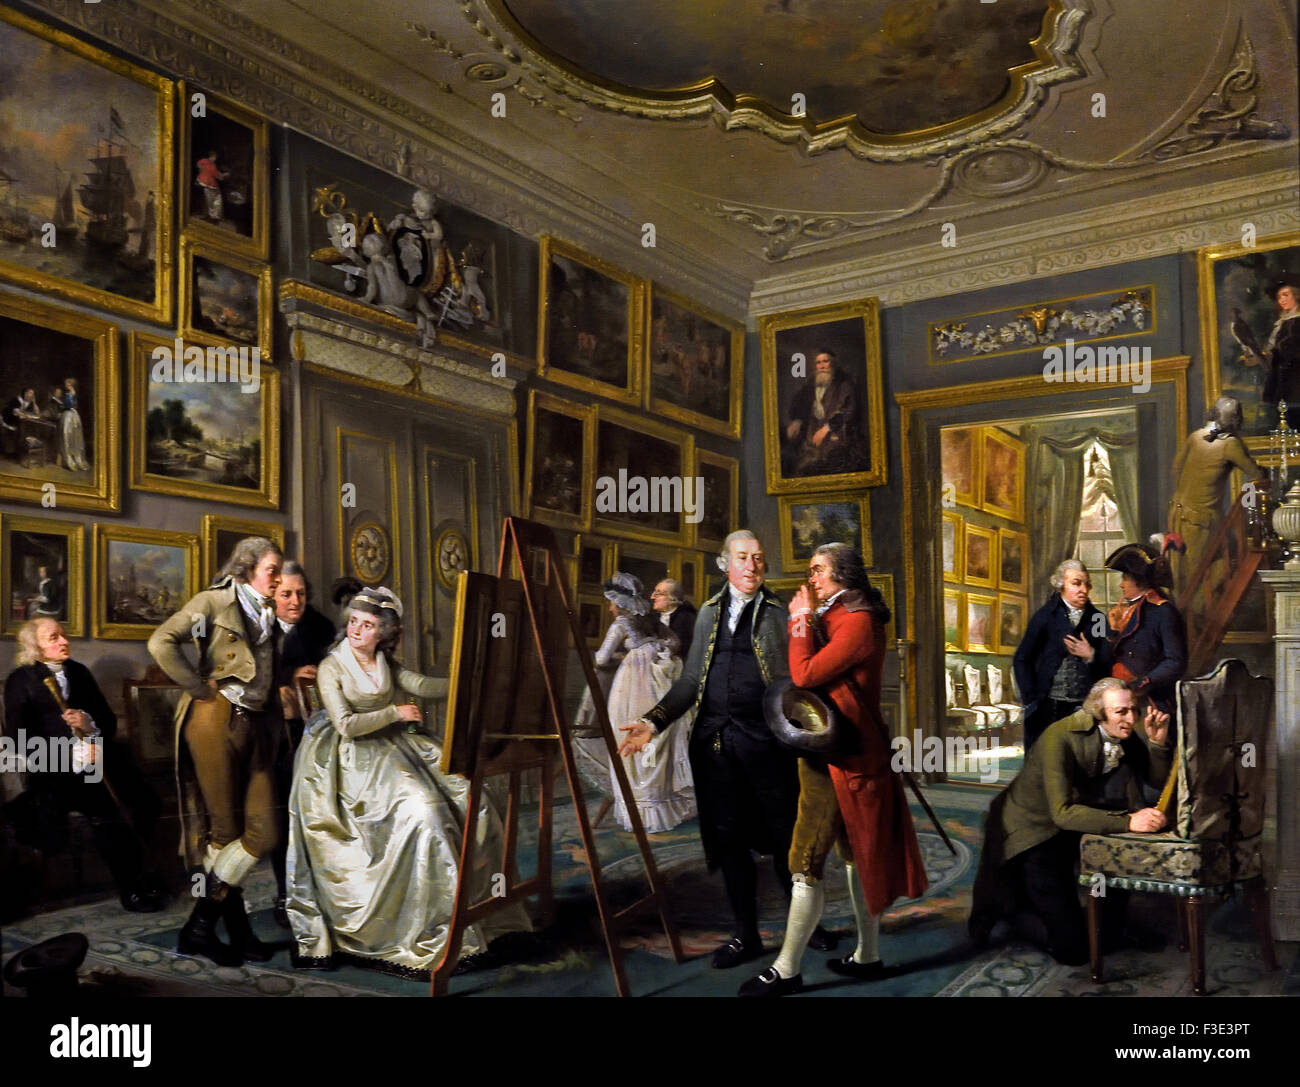 Die Kunst-Galerie von Jan Gildemeester Jansz, Adriaan de Lelie, 1794-1795 Niederlande Niederlande (Adriaan de Lelie 1755-1820 niederländischen Niederlande) Stockfoto